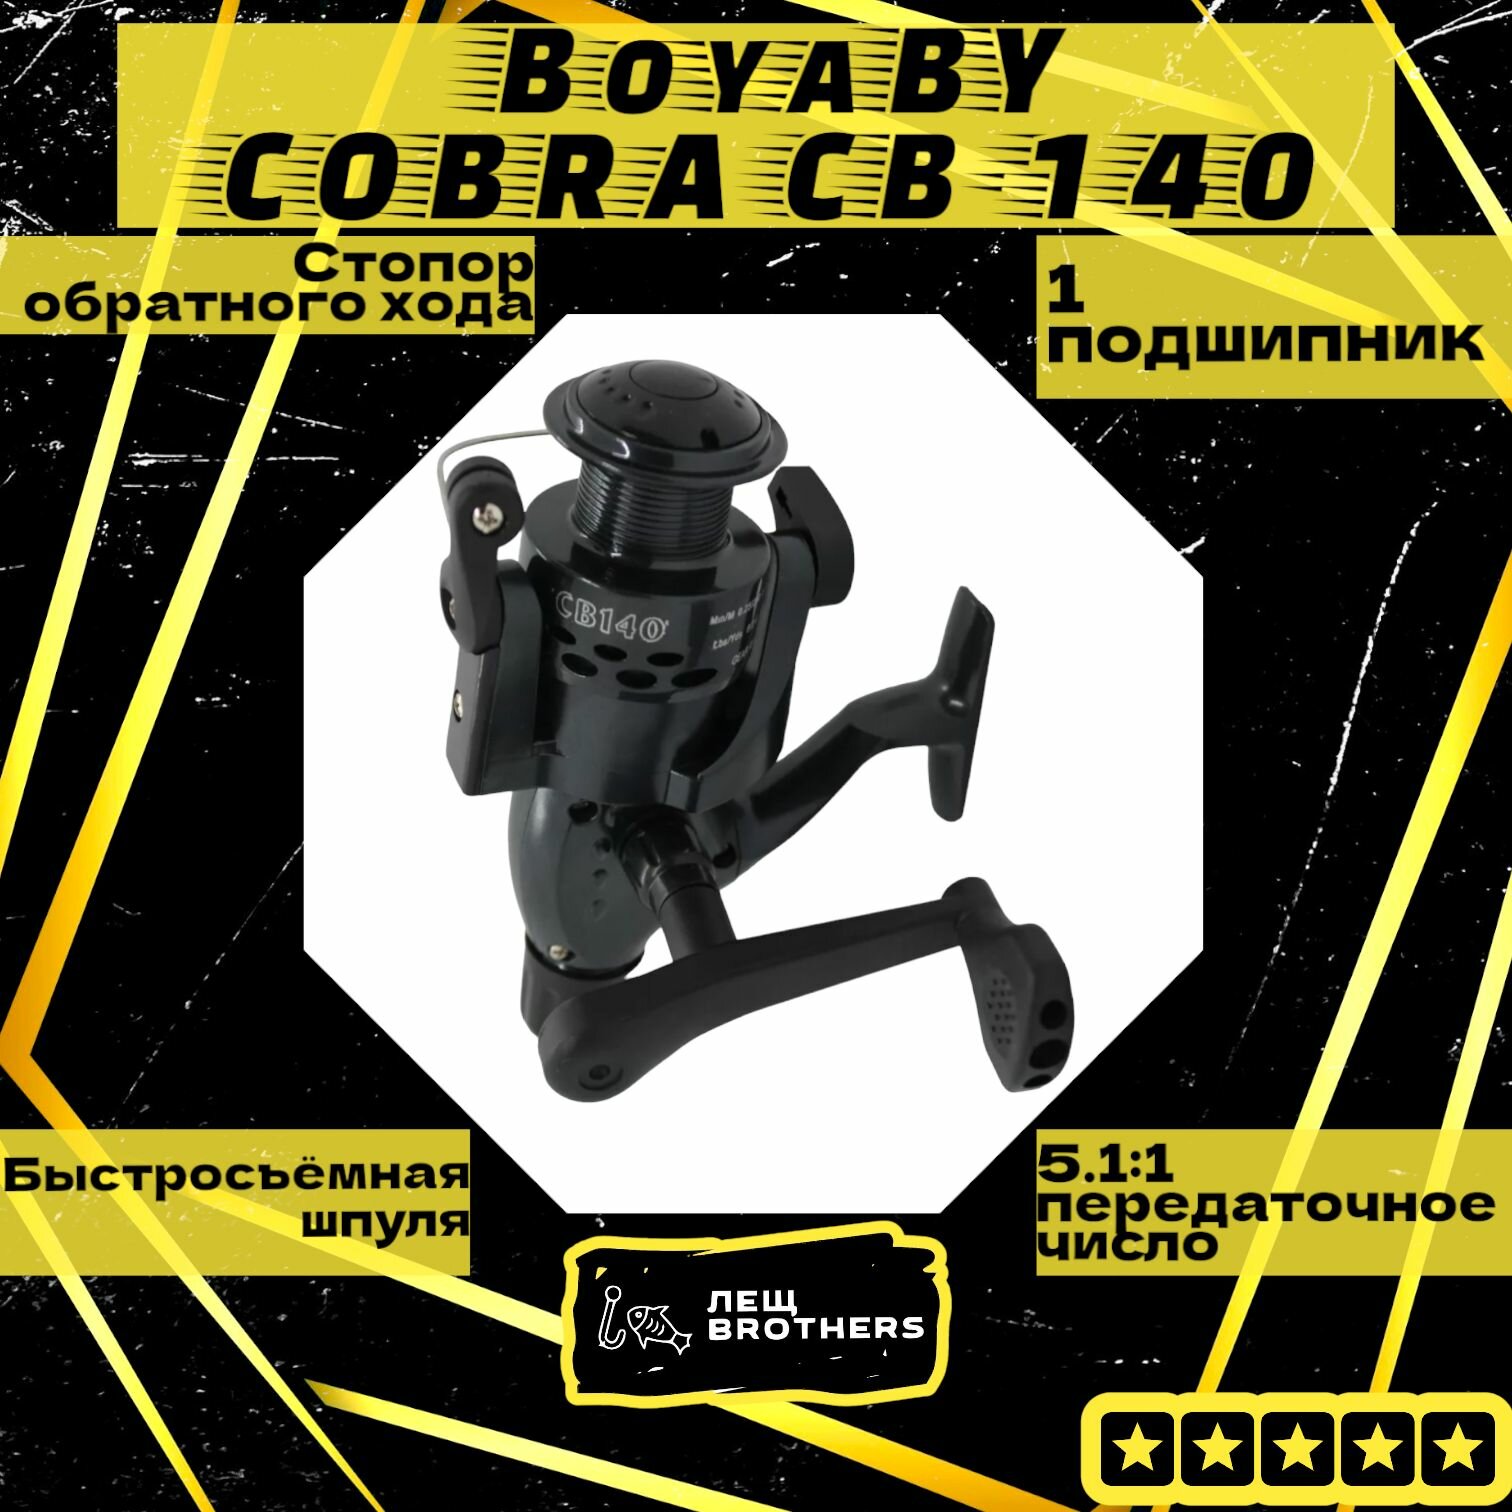 Катушка BoyaBY COBRA CB-140 задний фрикцион стопор обратного хода быстросъёмная шпуля 1 подшипник передаточное число 5.1:1